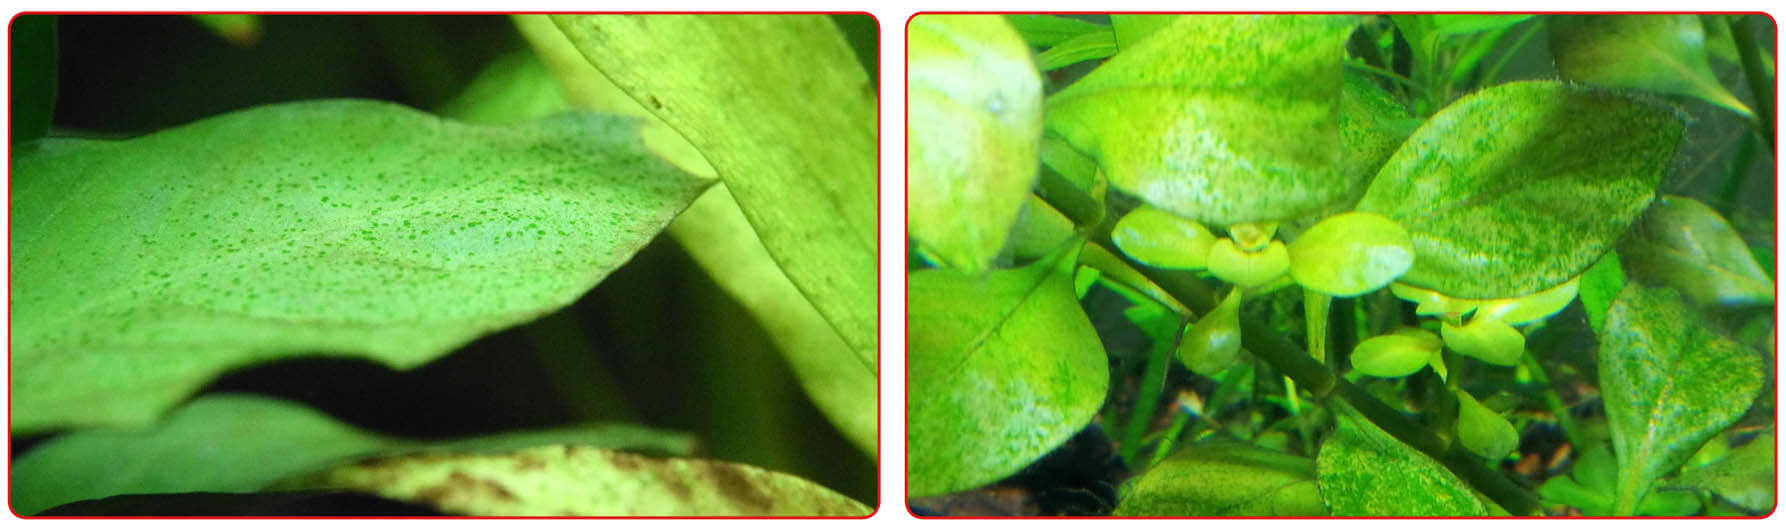 Ксенококус на листьях аквариумных растений